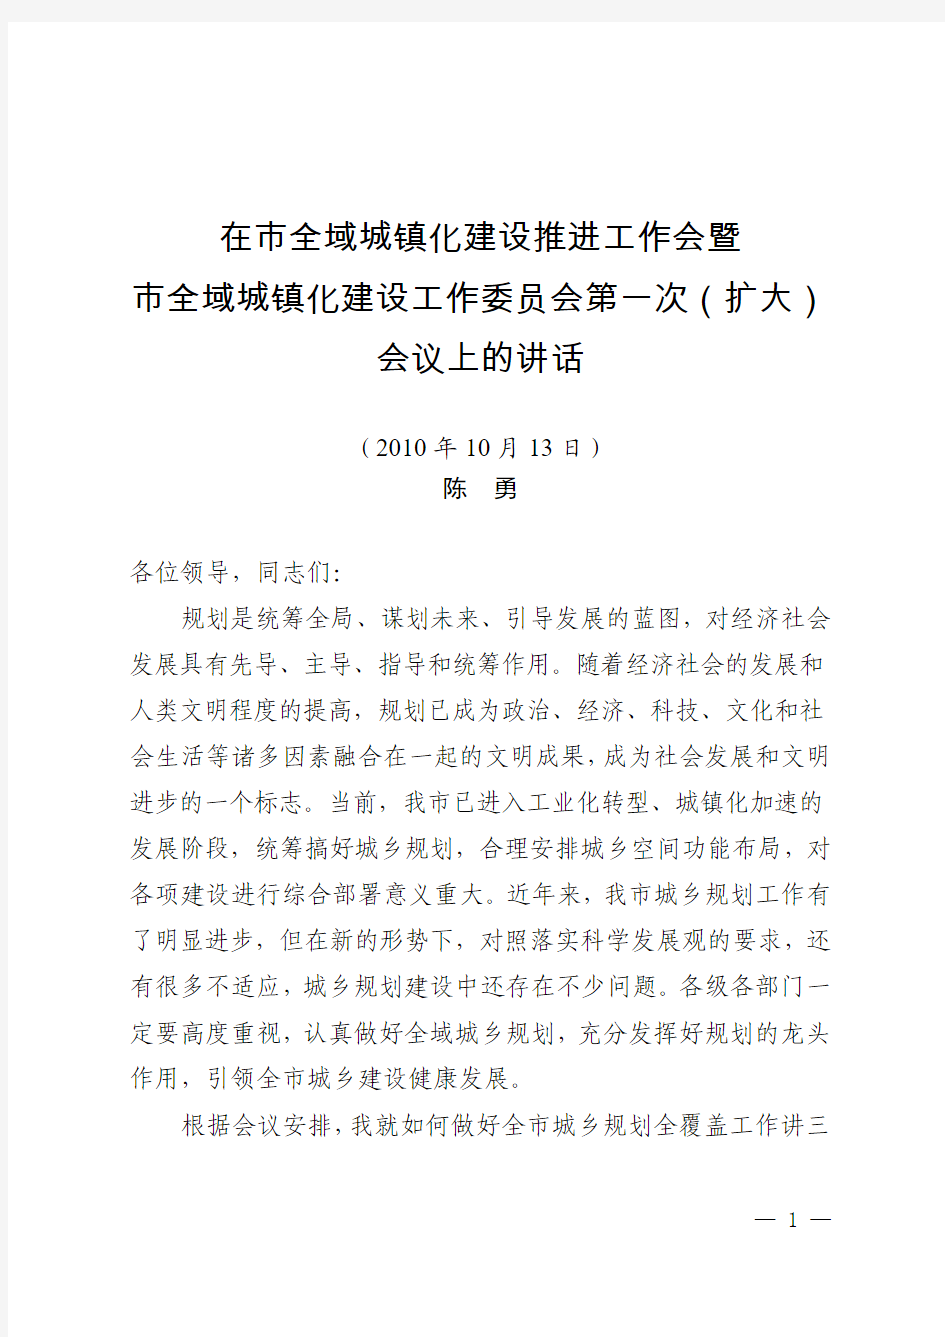 20101012陈勇副市长在全域城镇化会议上的讲话(印刷稿)